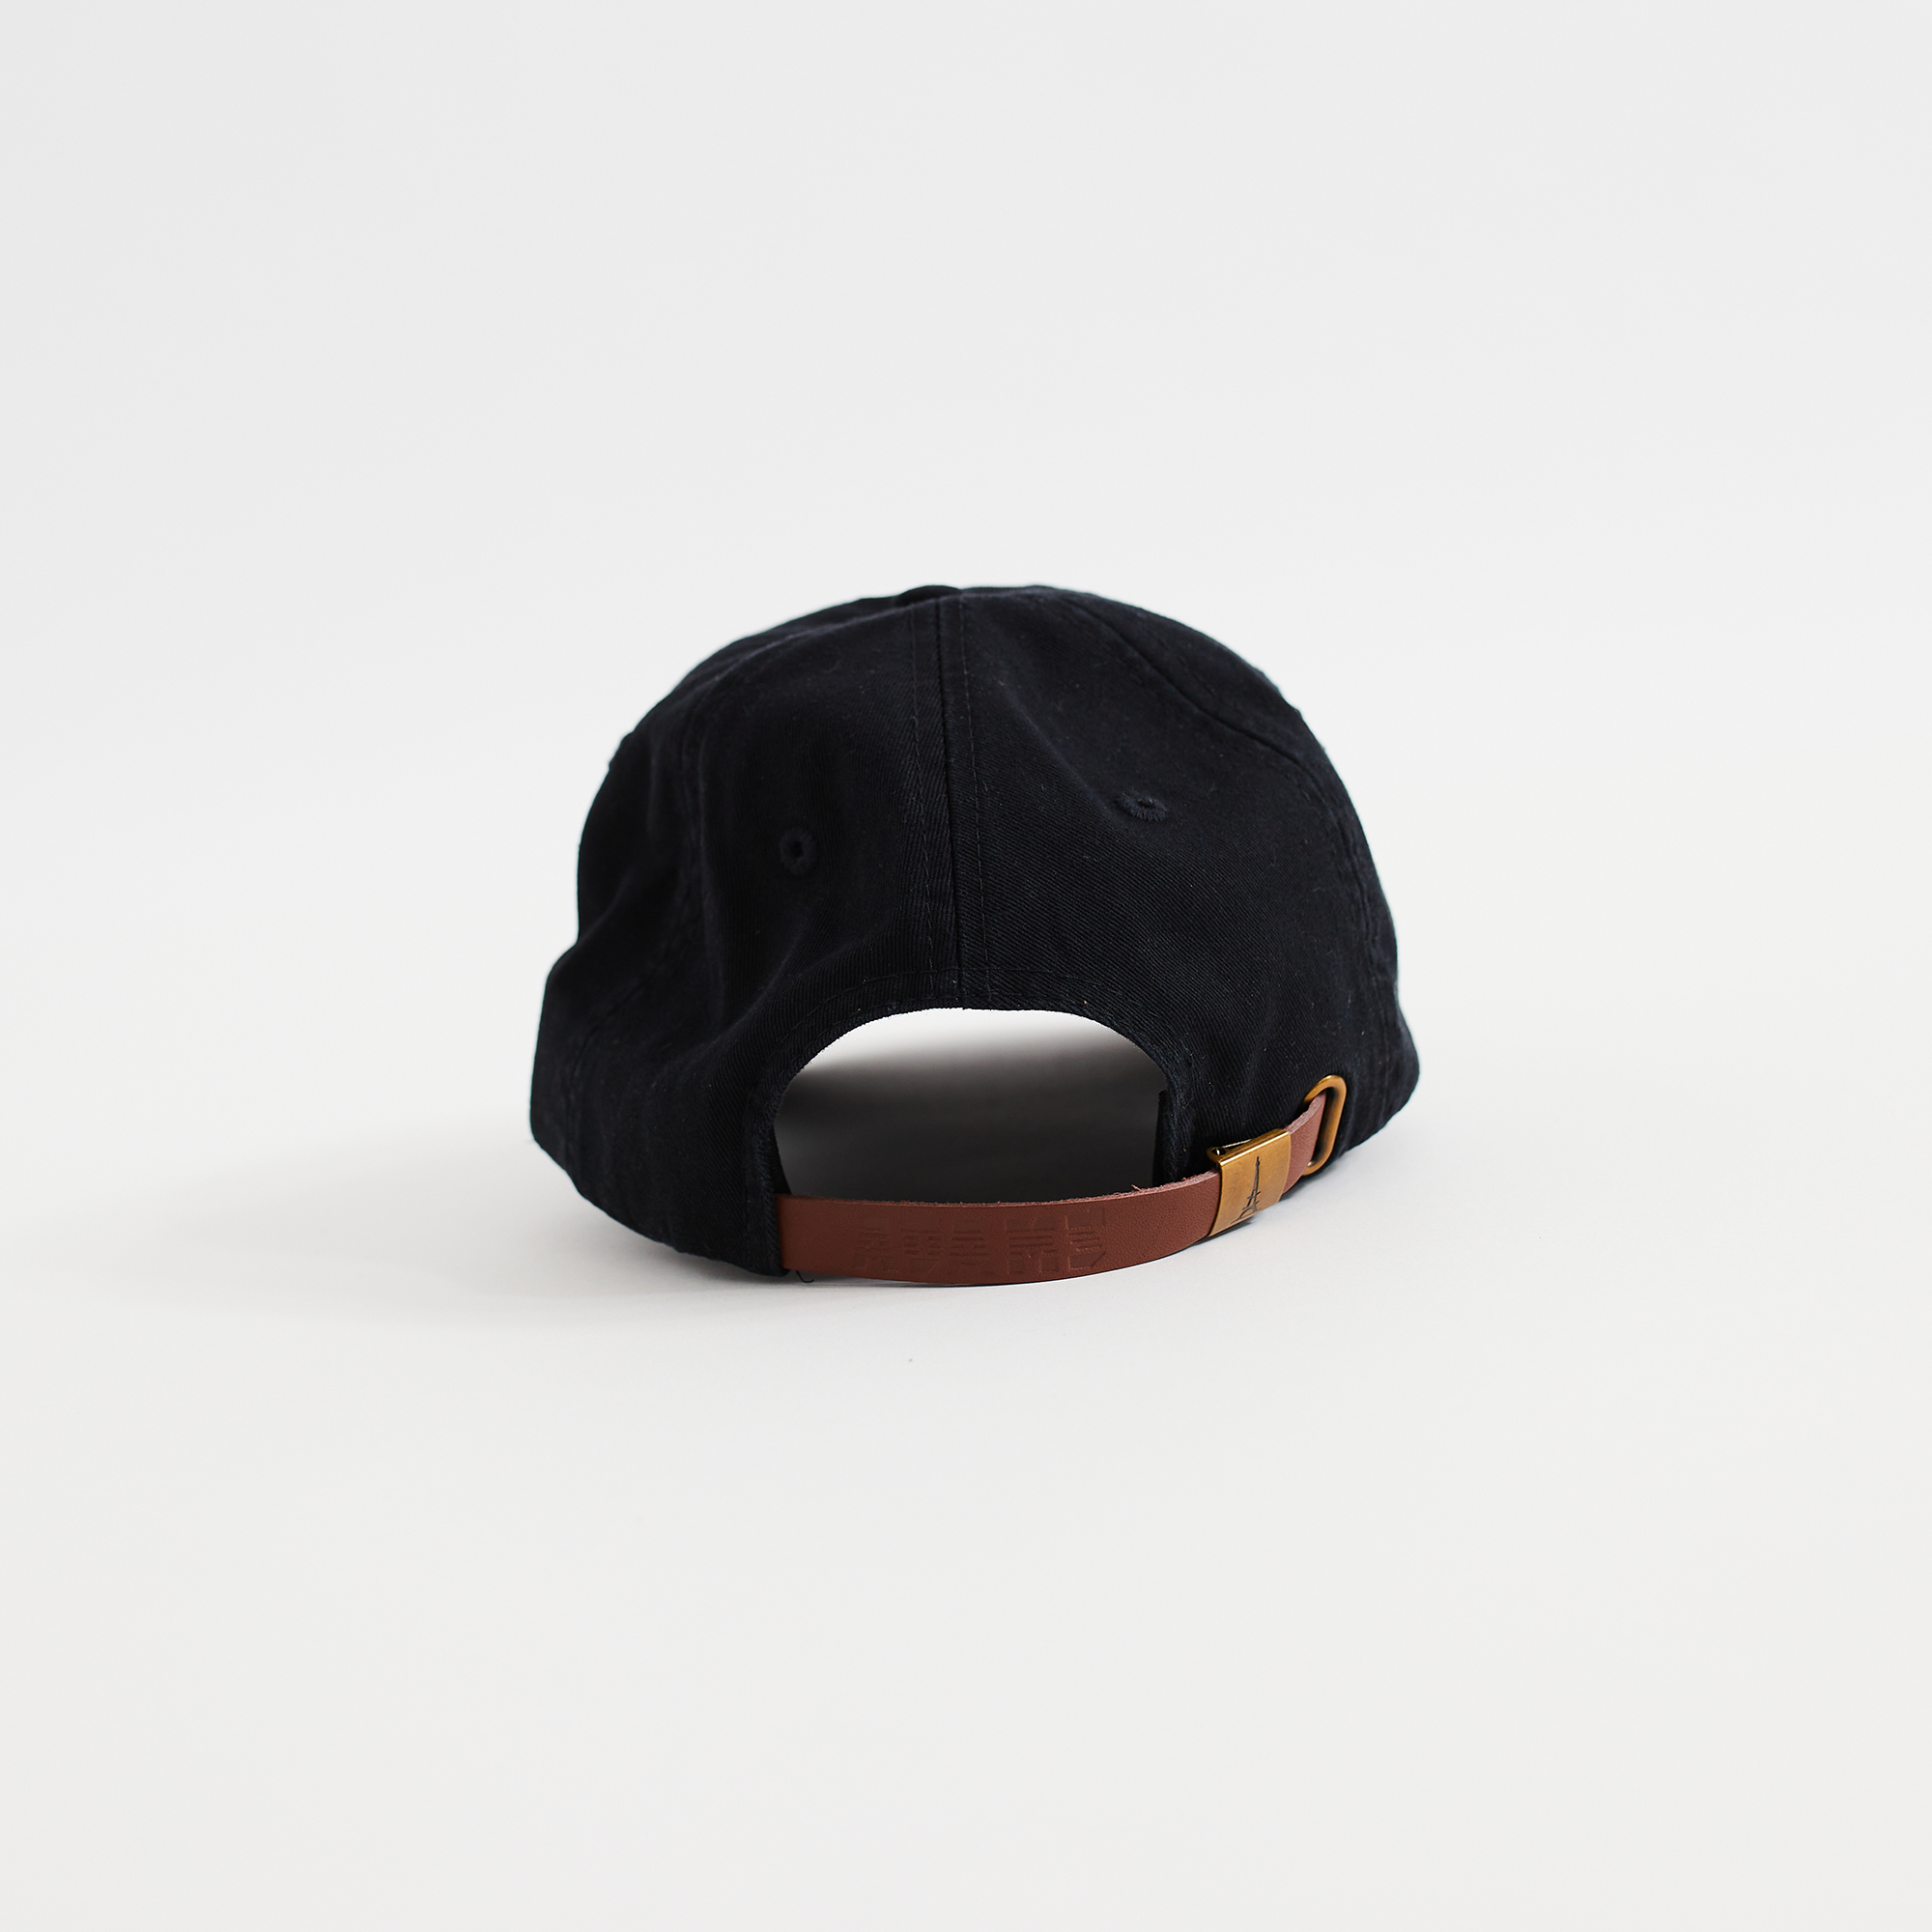 X-treme Graphic Design Cap (Black)